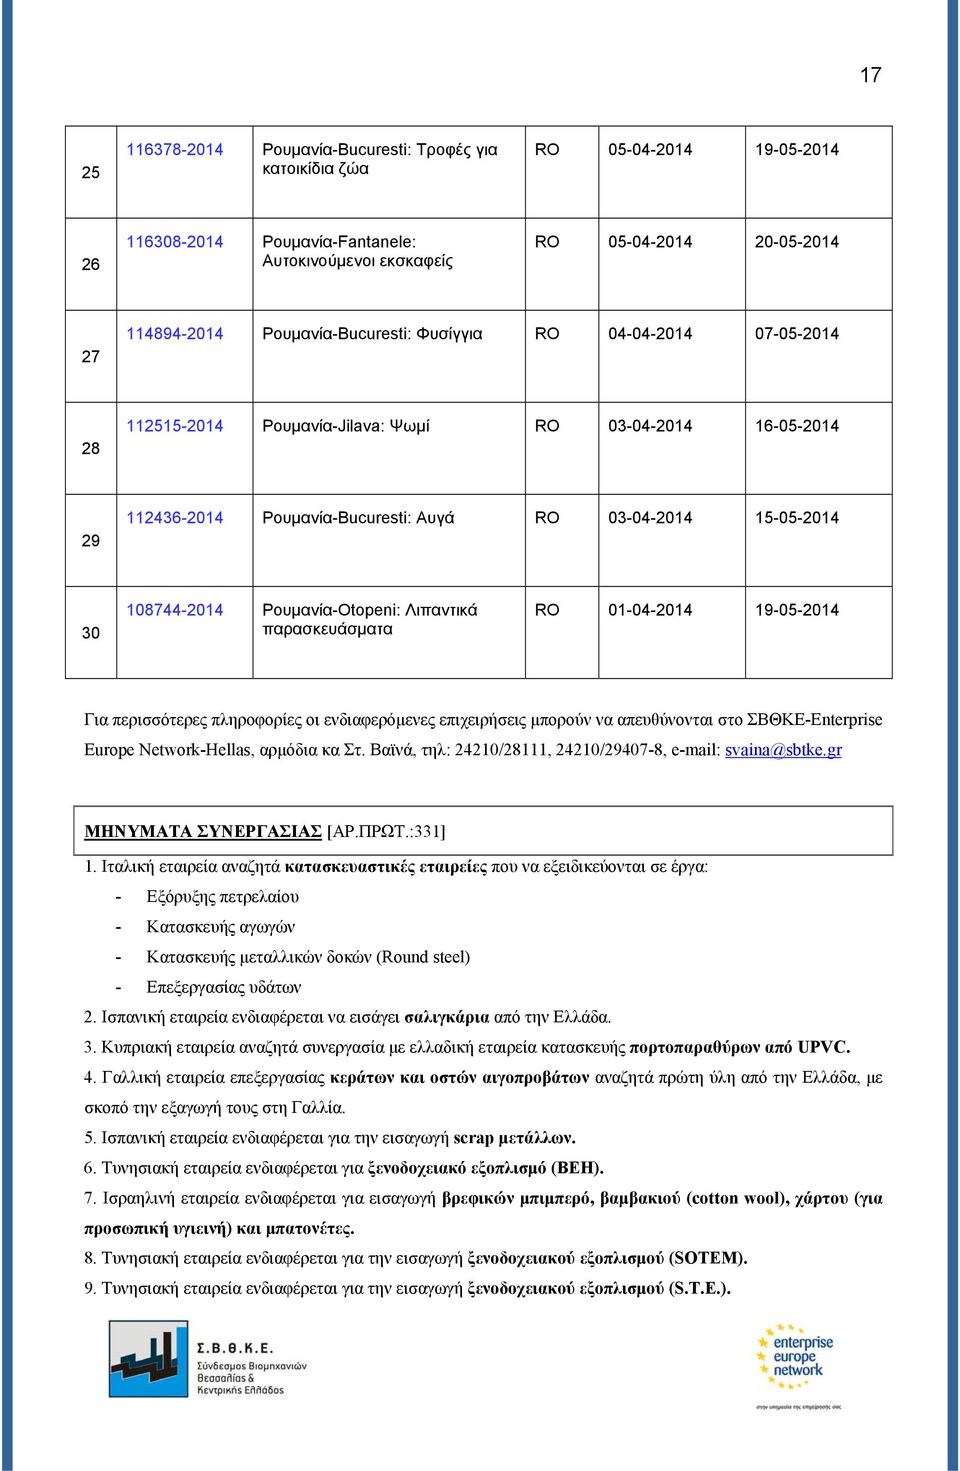 Ρουμανία-Otopeni: Λιπαντικά παρασκευάσματα RO 01-04-2014 19-05-2014 Για περισσότερες πληροφορίες οι ενδιαφερόμενες επιχειρήσεις μπορούν να απευθύνονται στο ΣΒΘΚΕ-Enterprise Europe Network-Hellas,